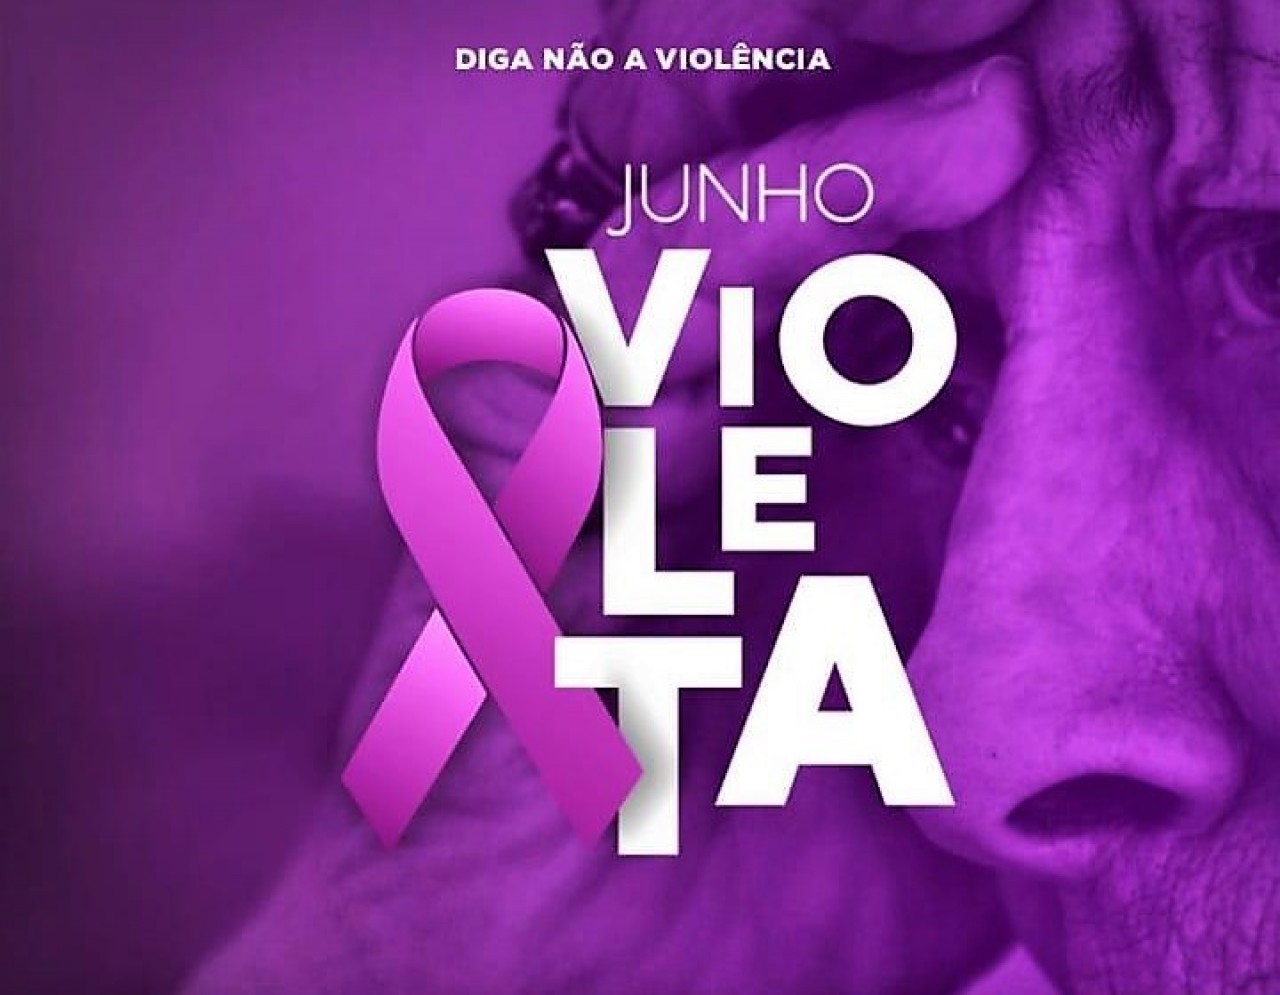 Junho Violeta alerta para o combate à violência contra as pessoas idosas